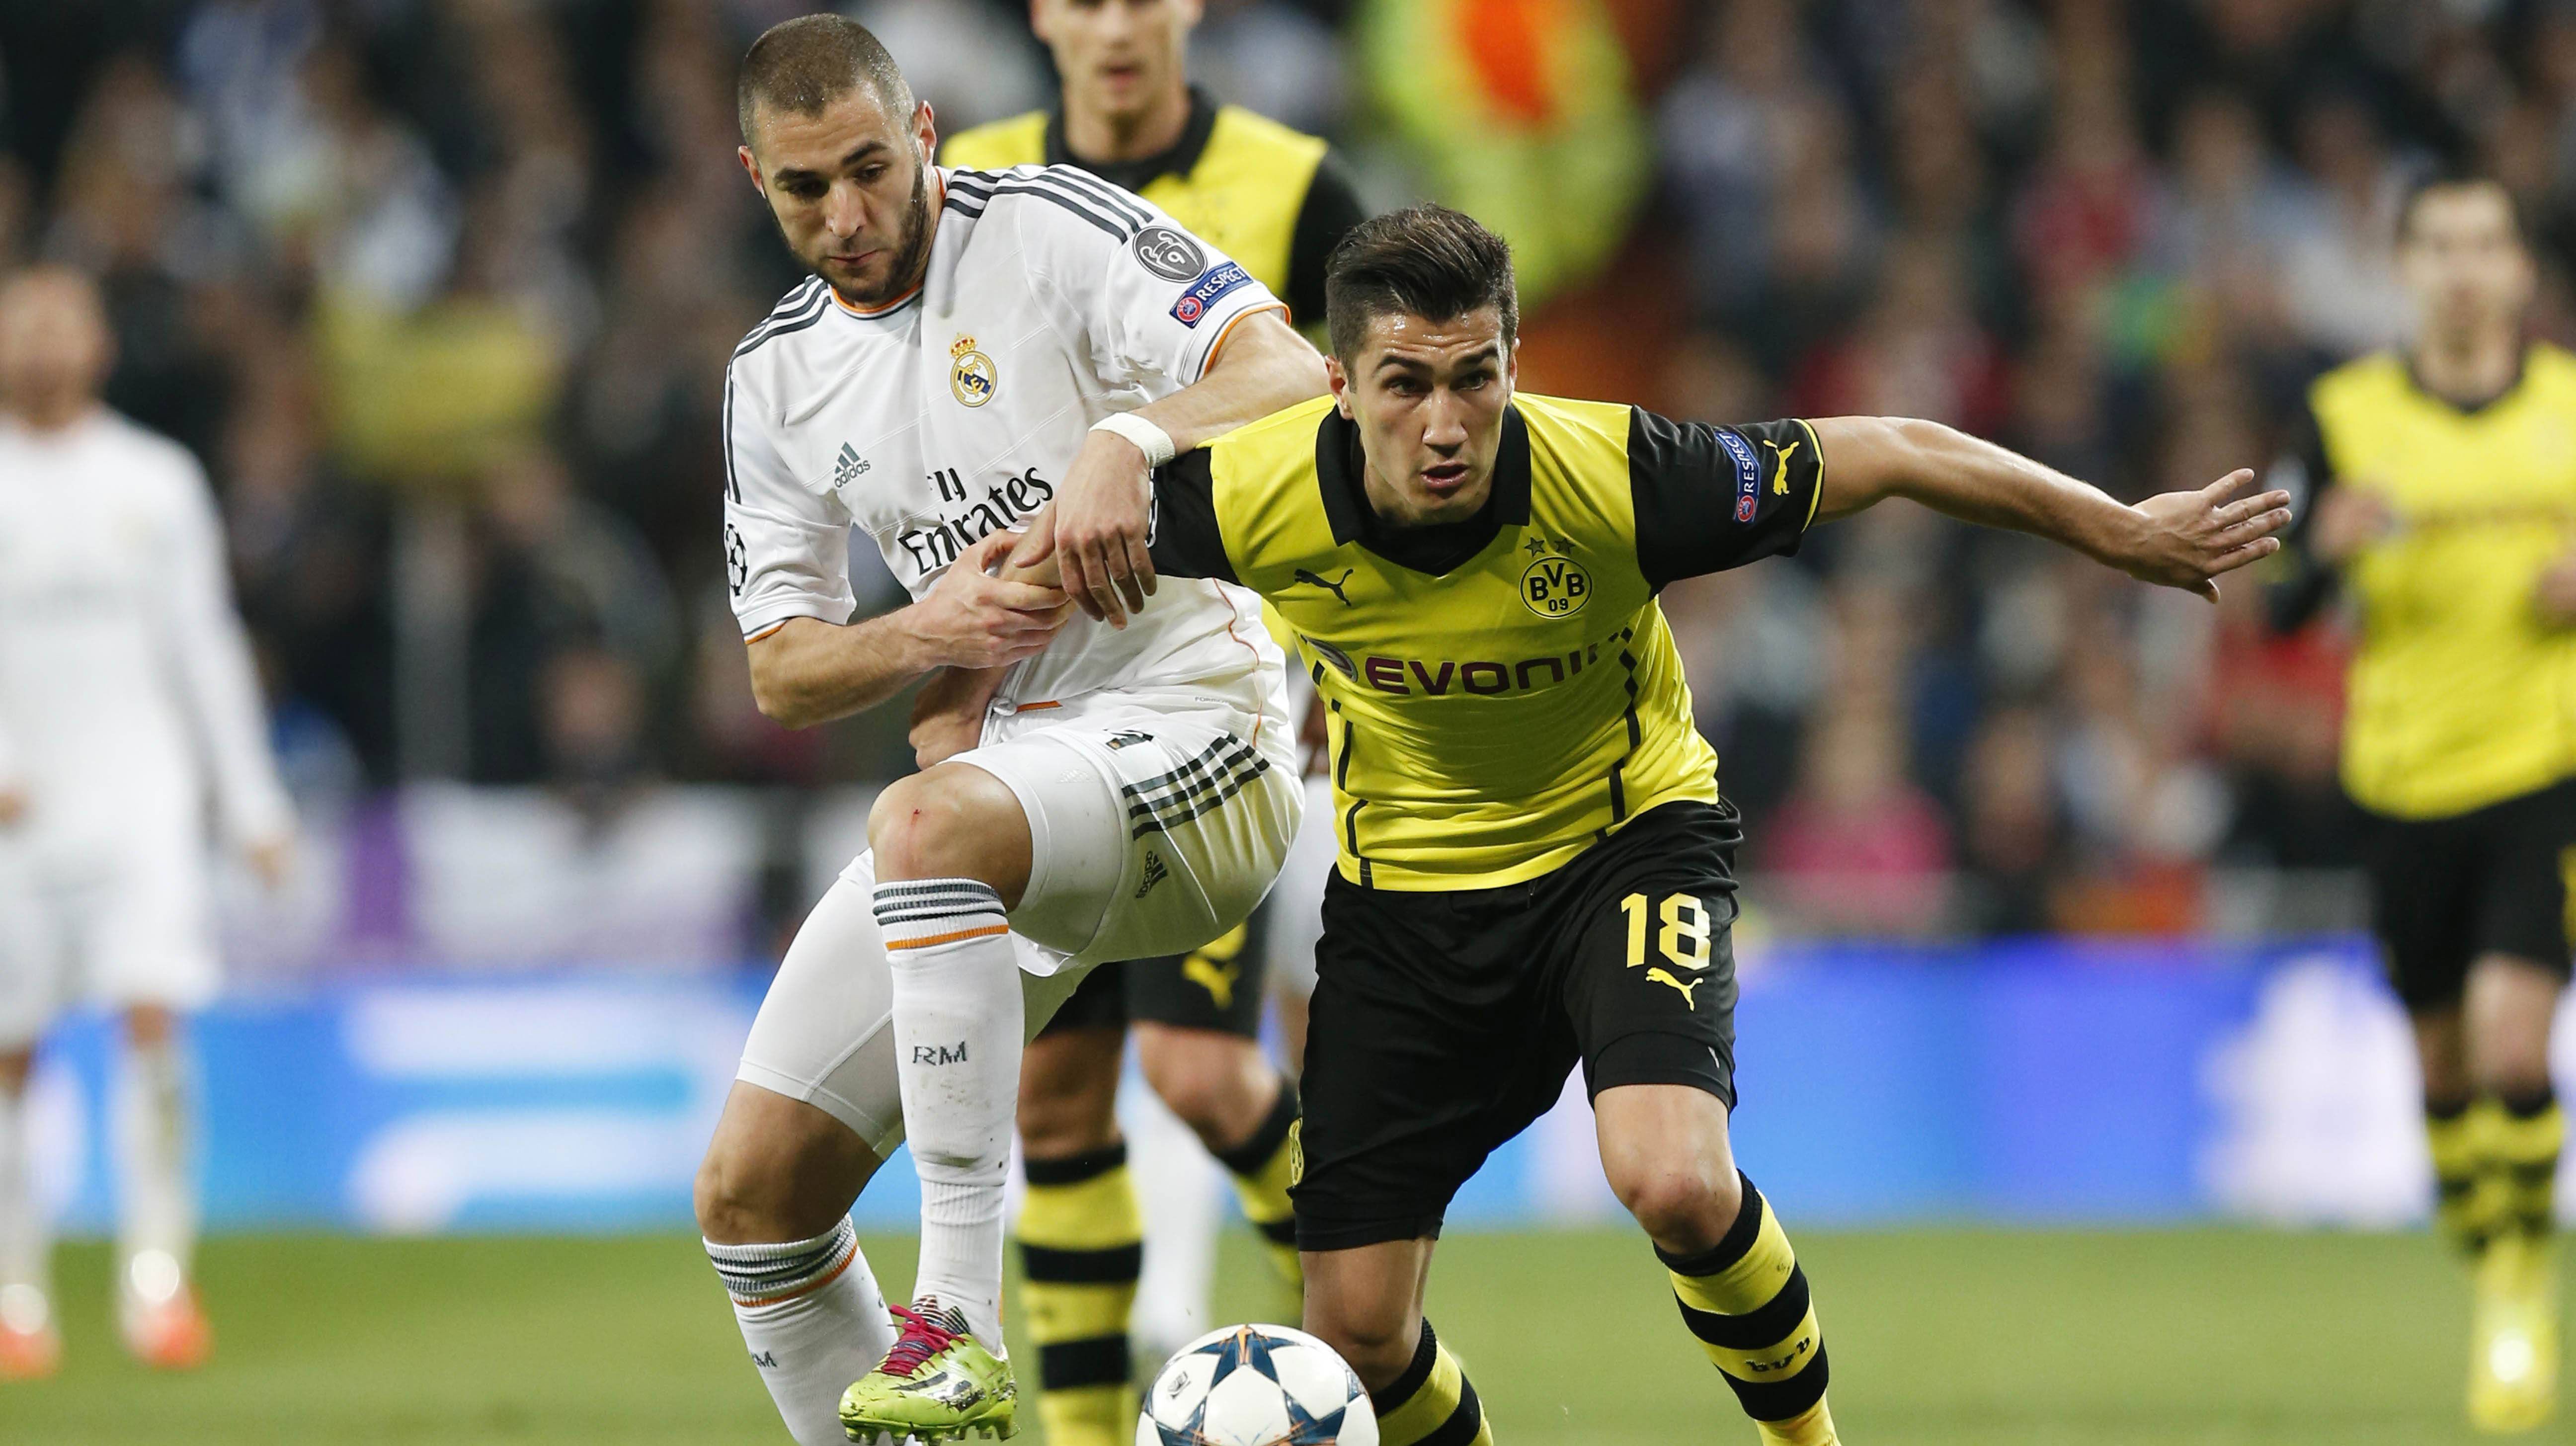 
                <strong>Nuri Sahin fest verpflichtet</strong><br>
                Rückkehrer Nuri Sahin wird in Dortmund bleiben. Der BVB zog vor kurzem die Option, den türkischen Nationalspieler nach dem Ausleihgeschäft mit Real Madrid fest zu verpflichten.
              